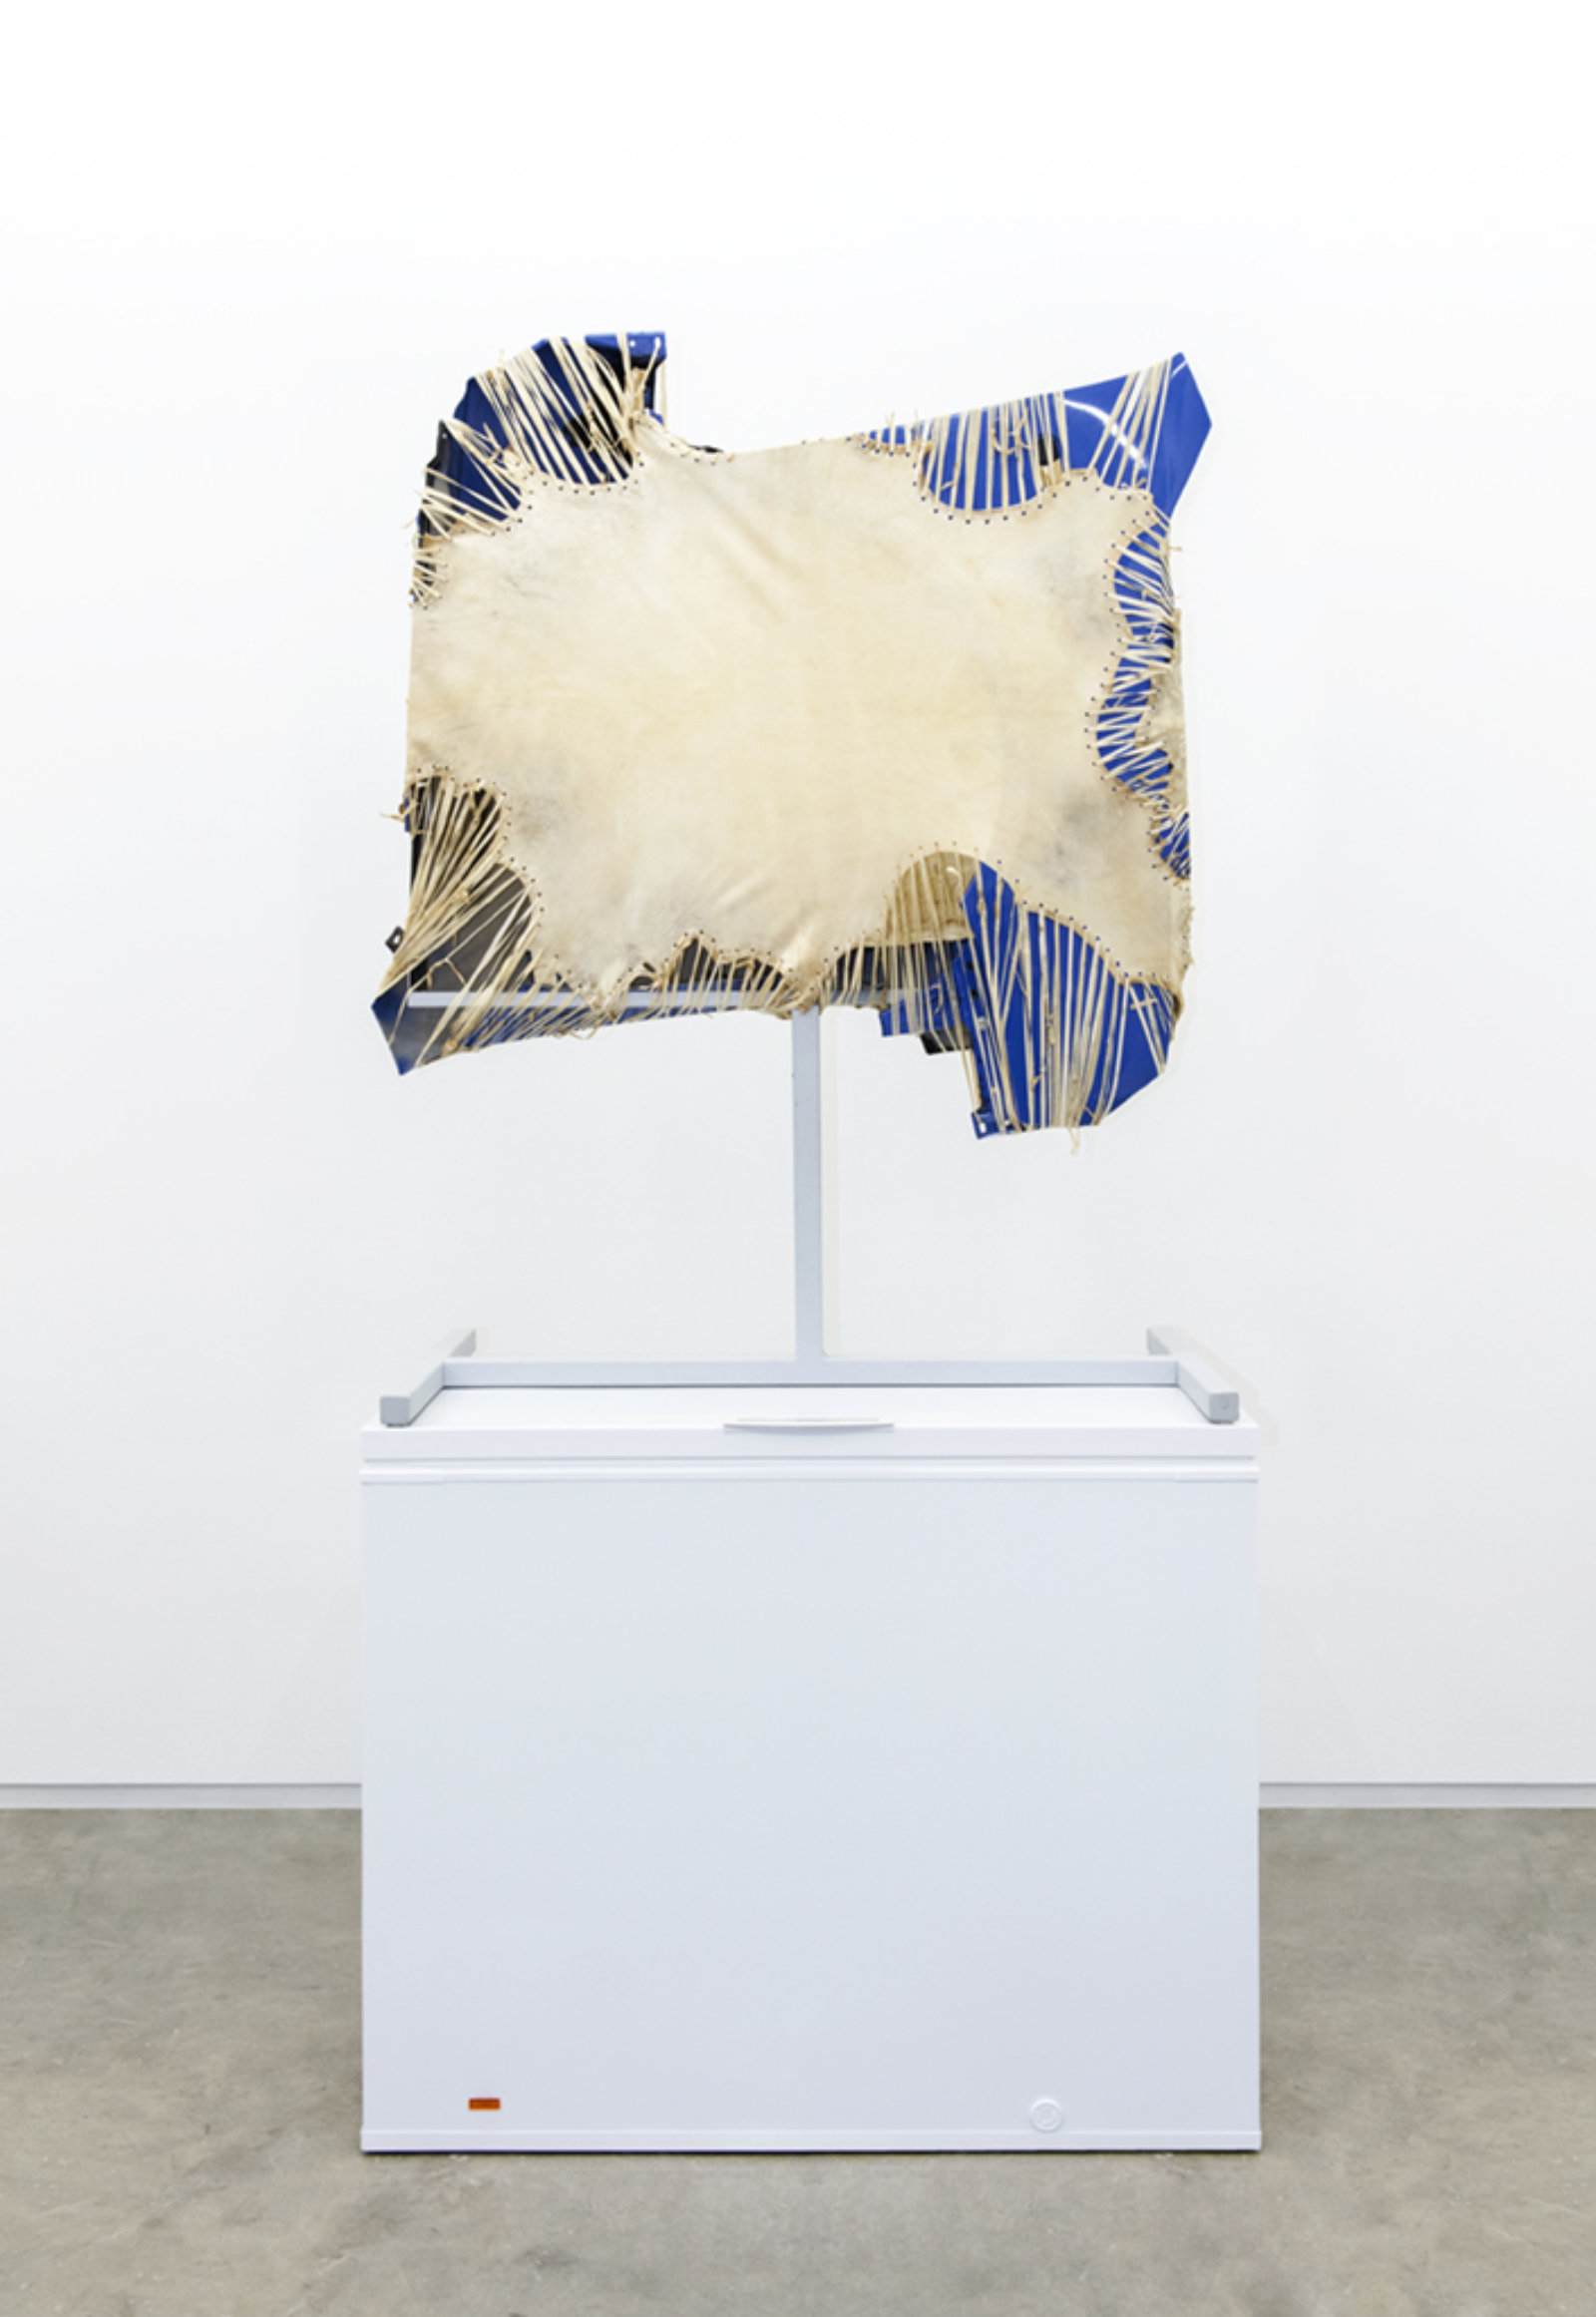 Brian Jungen, Mother Tongue, 2013, steel, deer hide, vw fenders, freezer, 100 x 51 x 28 in. (256 x 130 x 71 cm)